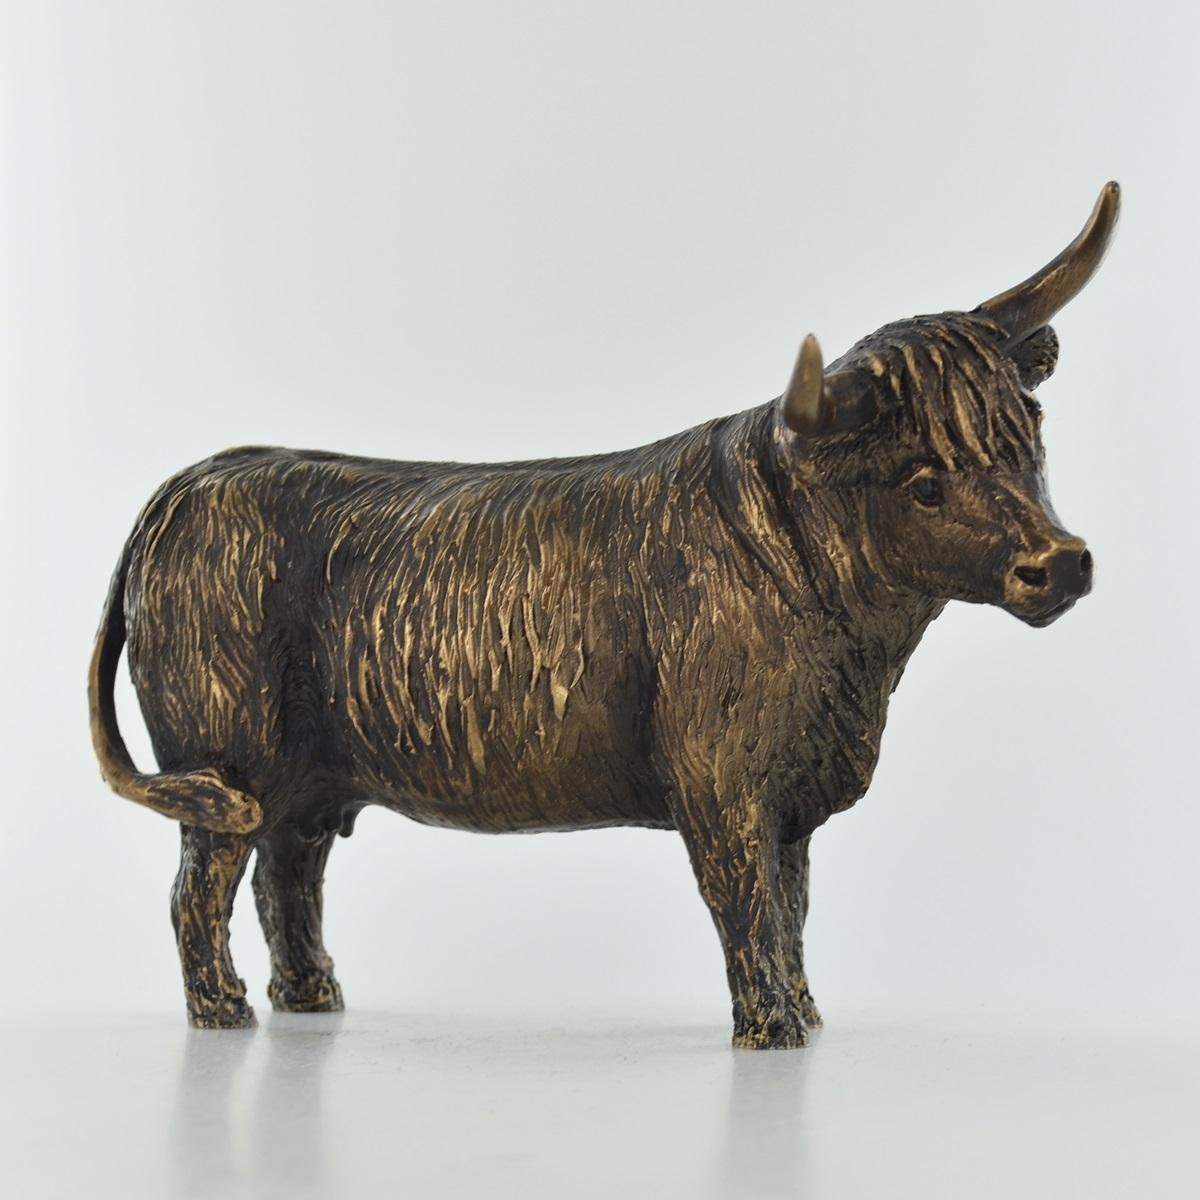 Highland cow bronze figurine harriet glen animal sculpture home decor